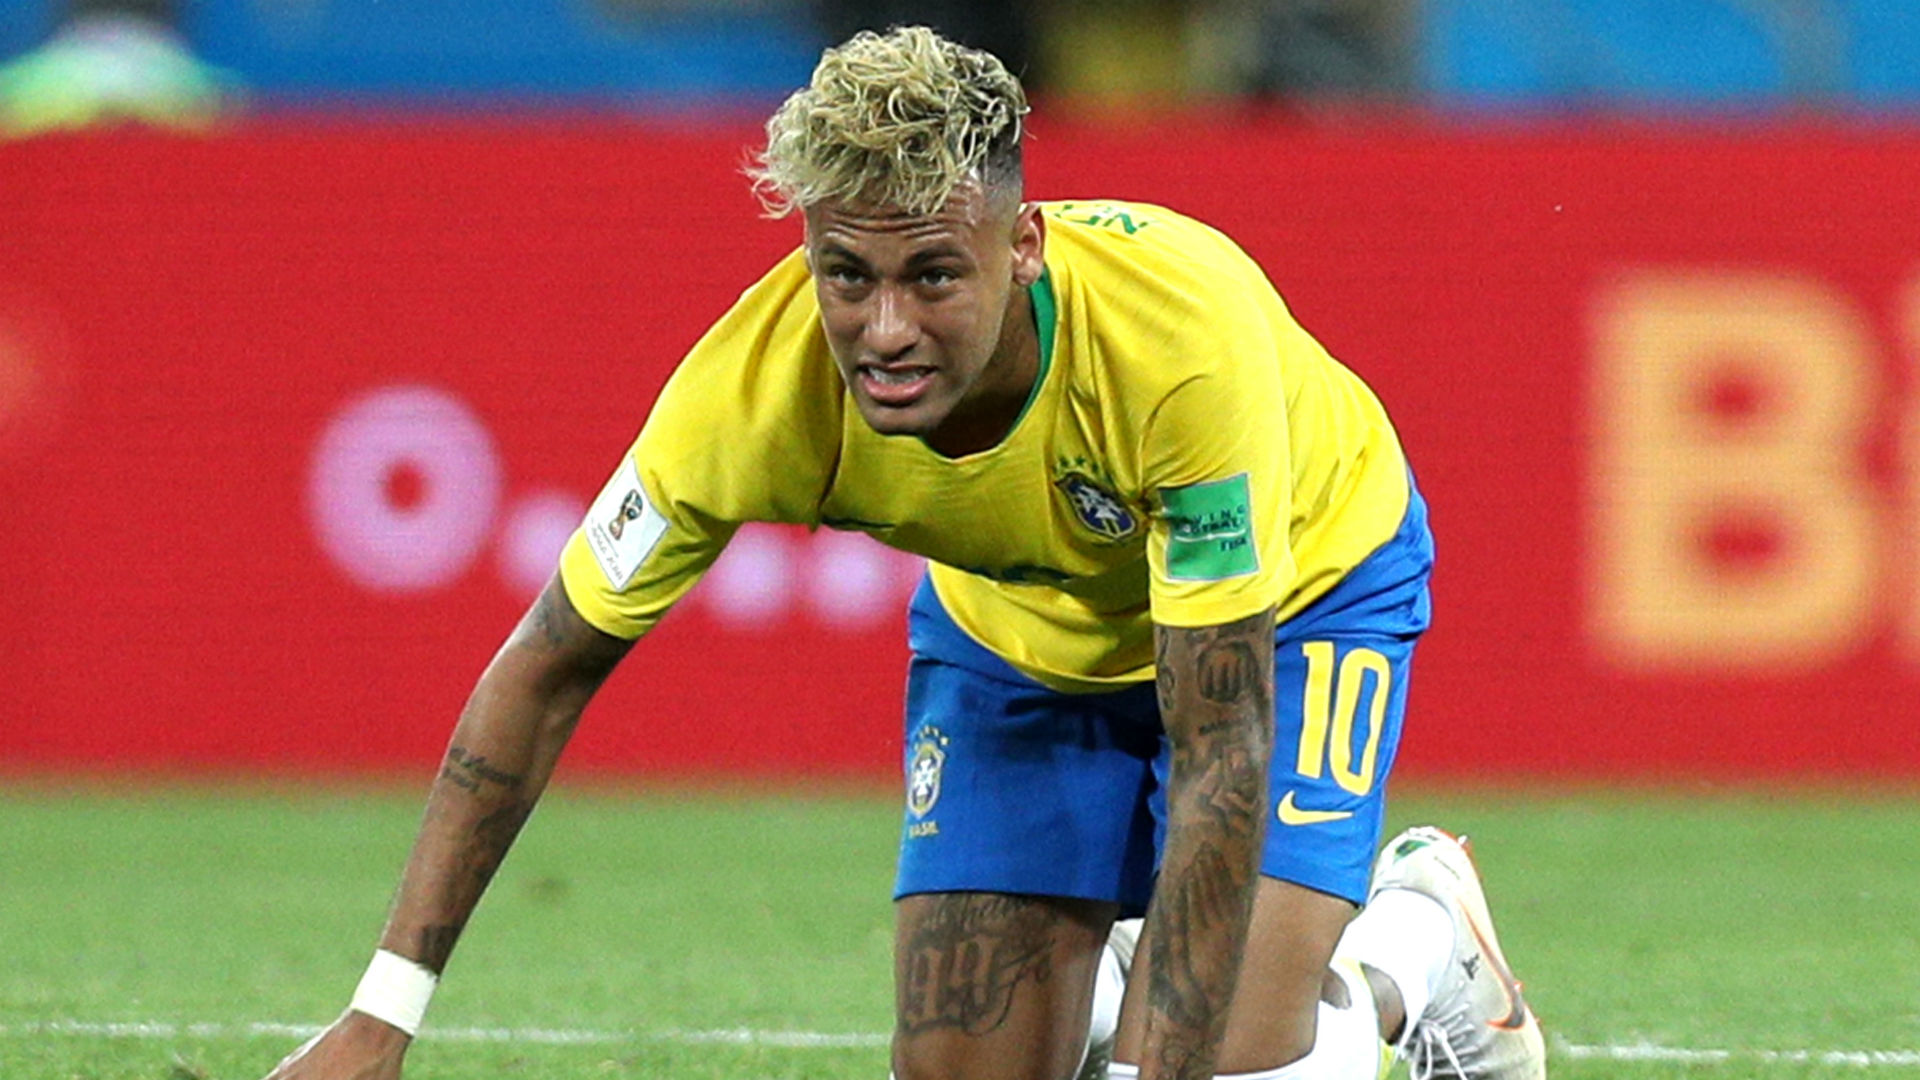 cantona mocks neymar with 'spaghetti al dente' haircut